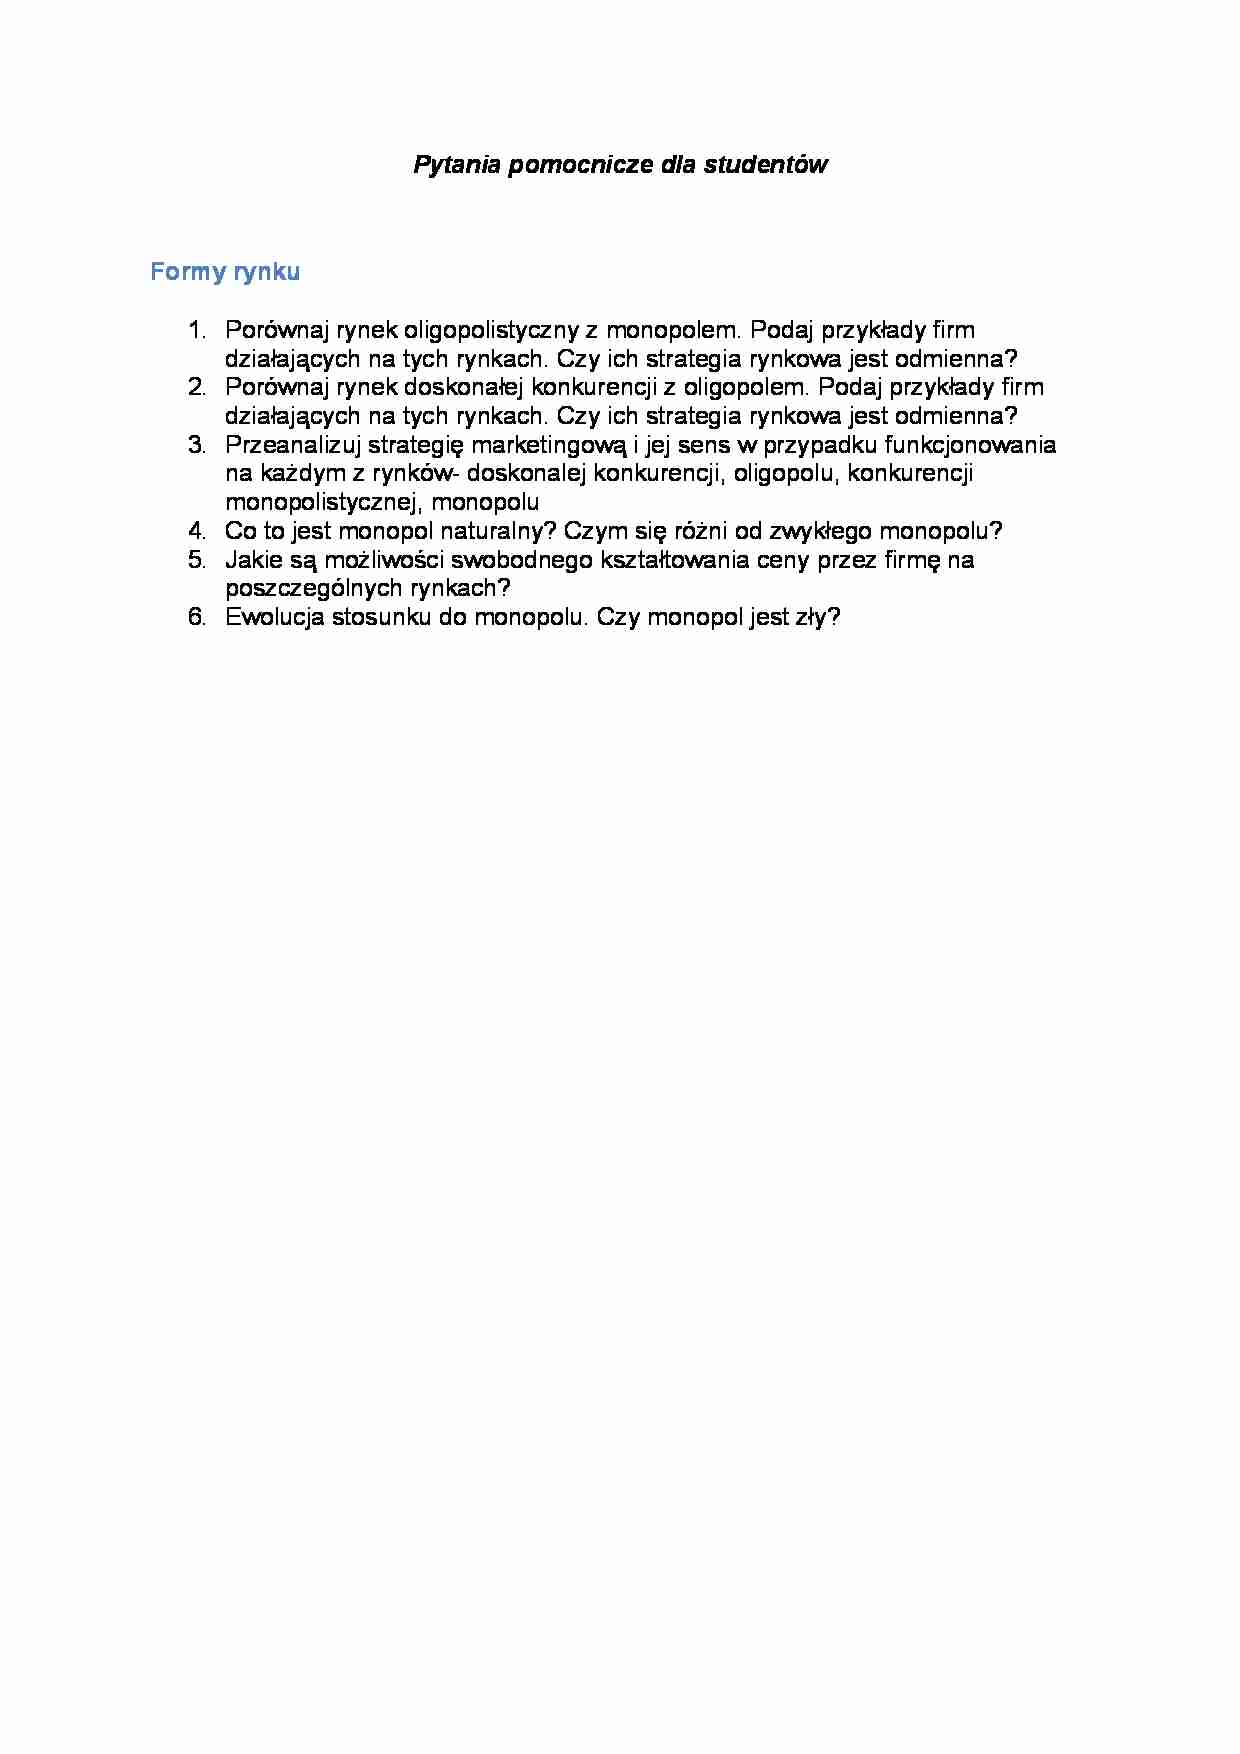 Pytania do wykładu - Formy rynku - strona 1